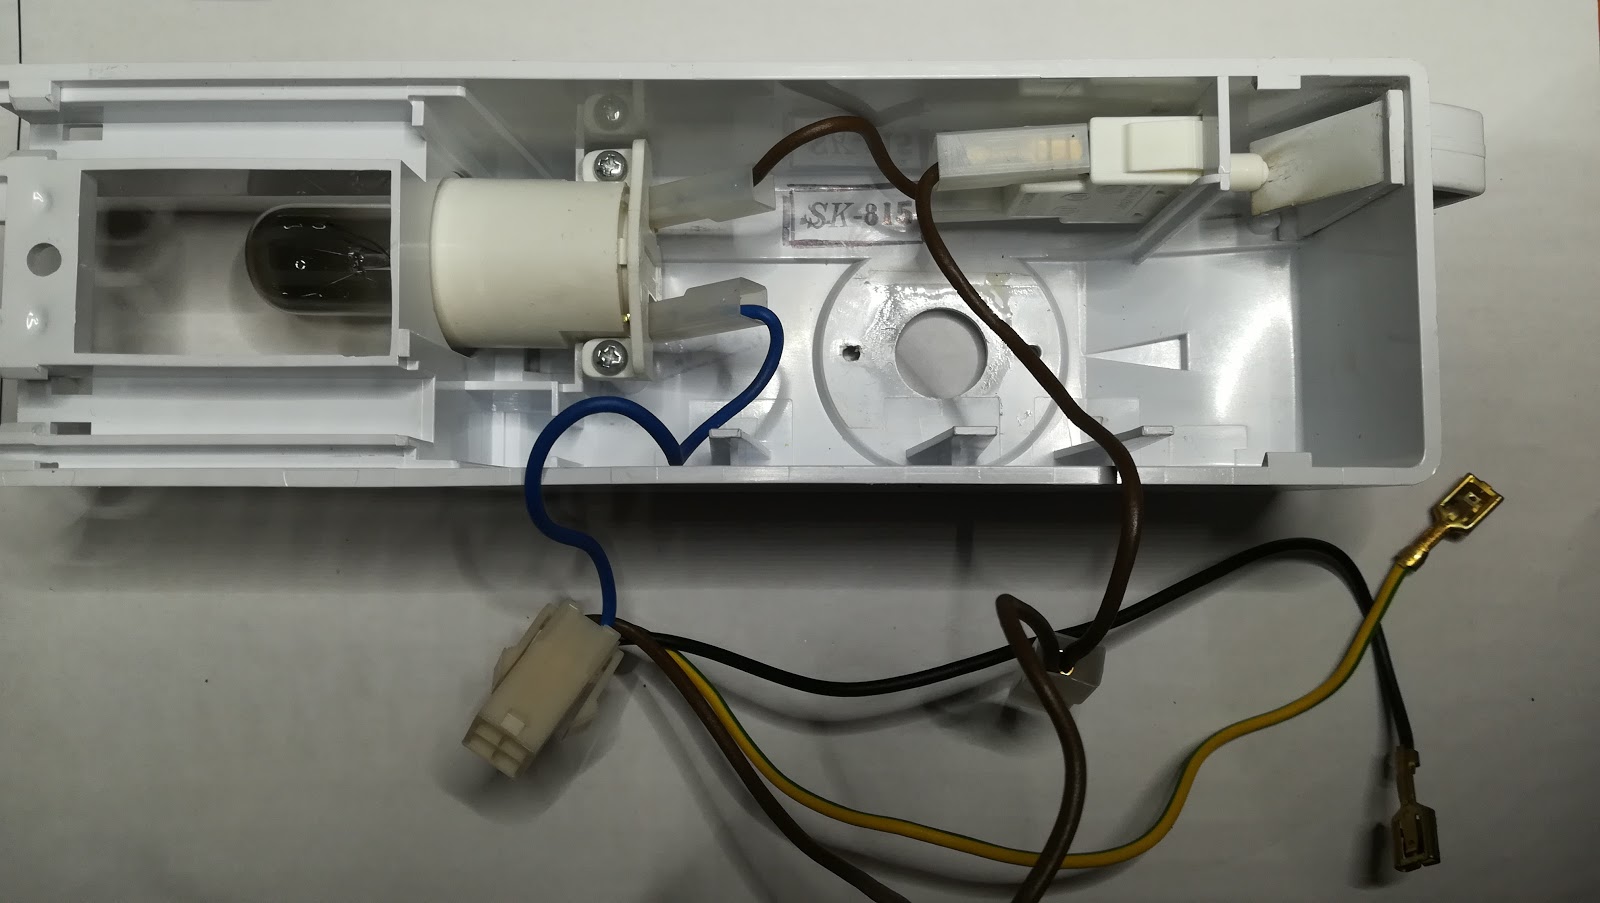 Jak opravit termostat lednice?